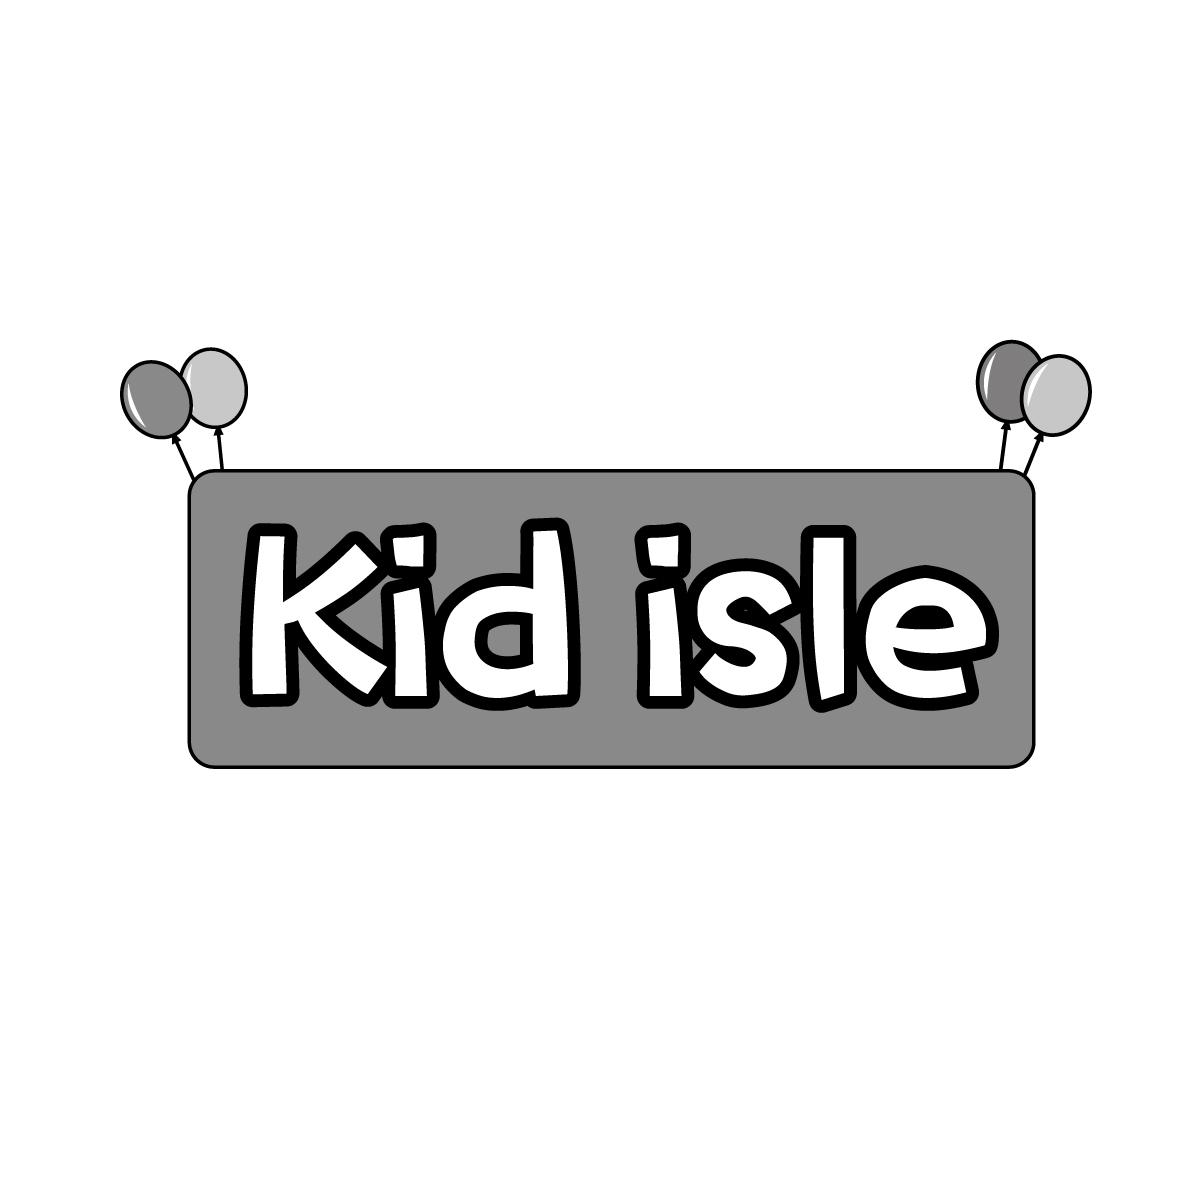 KID ISLE